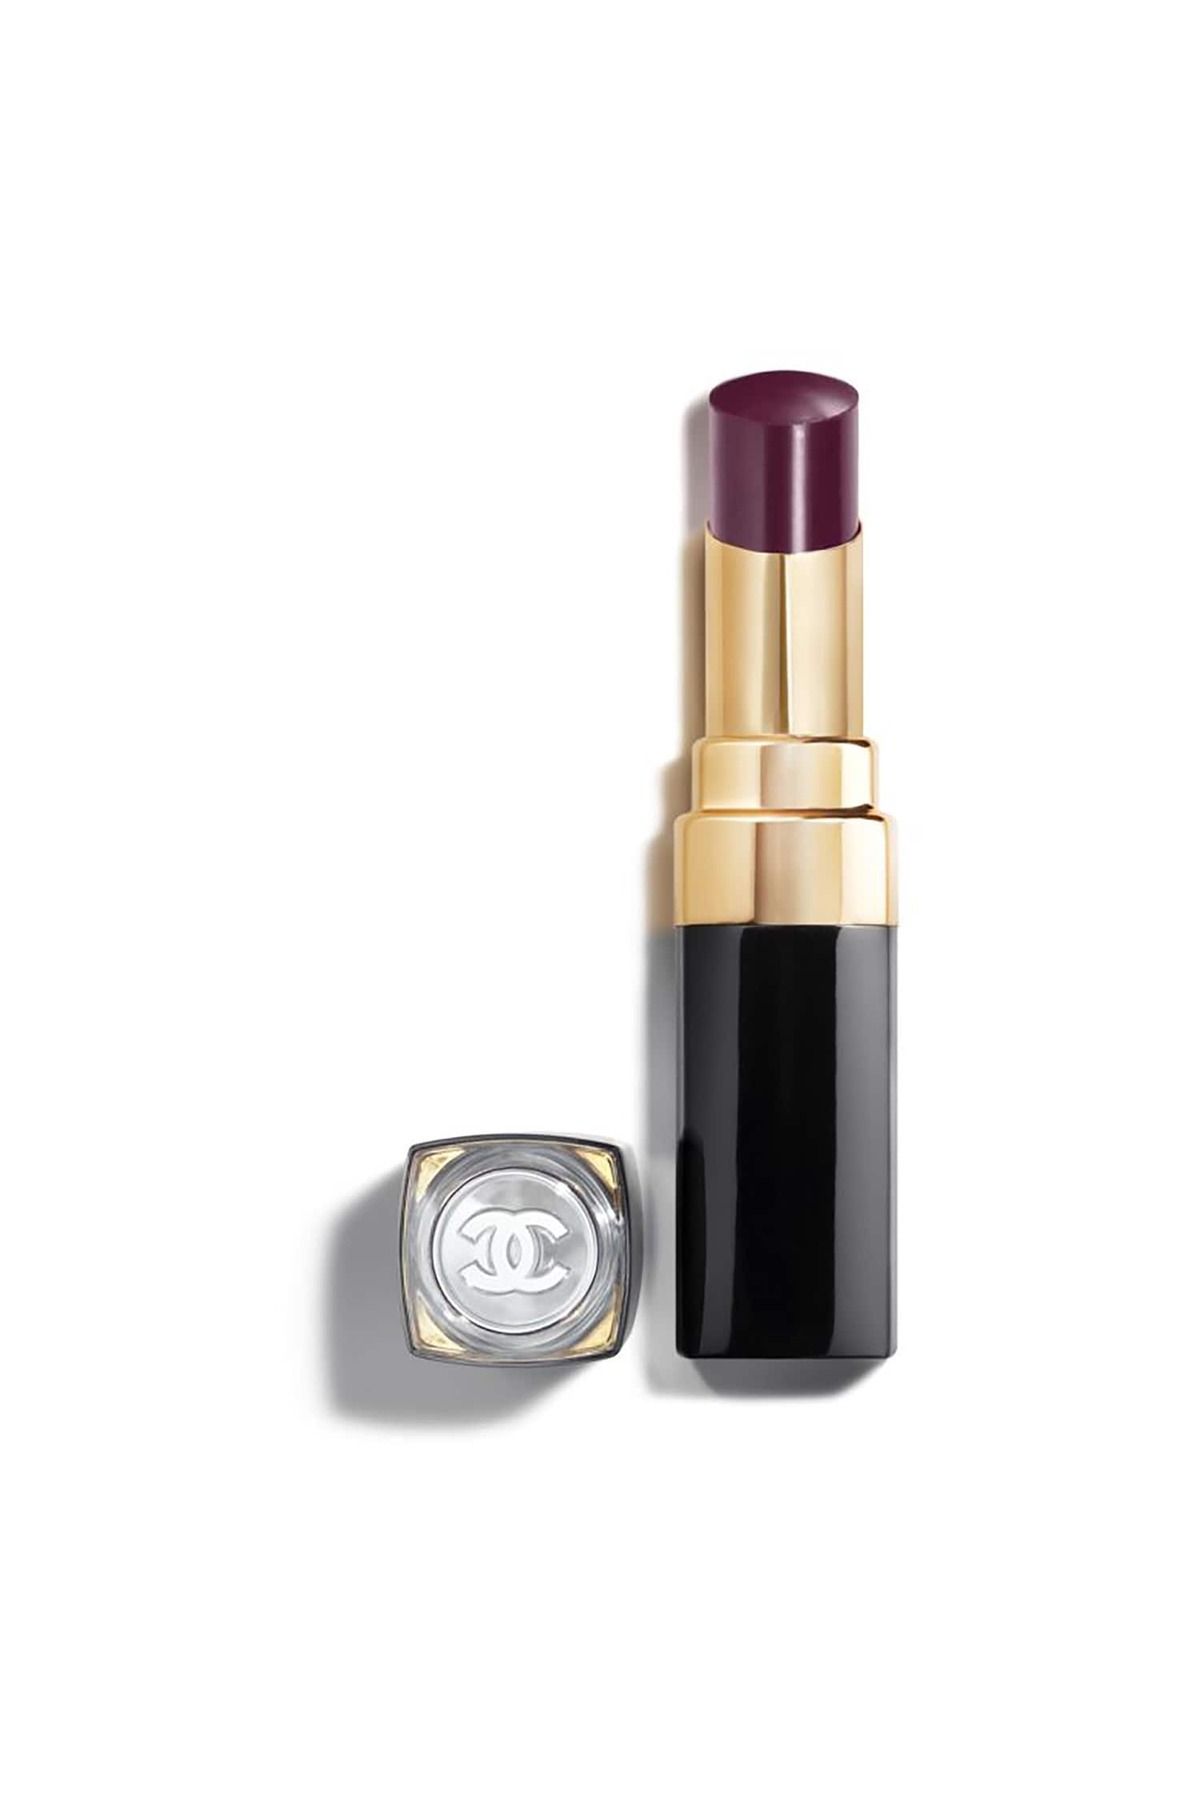 Chanel Rouge Coco Flash Işık Yansıtma Özellikli Nemlendirici Pigmentli Ruj